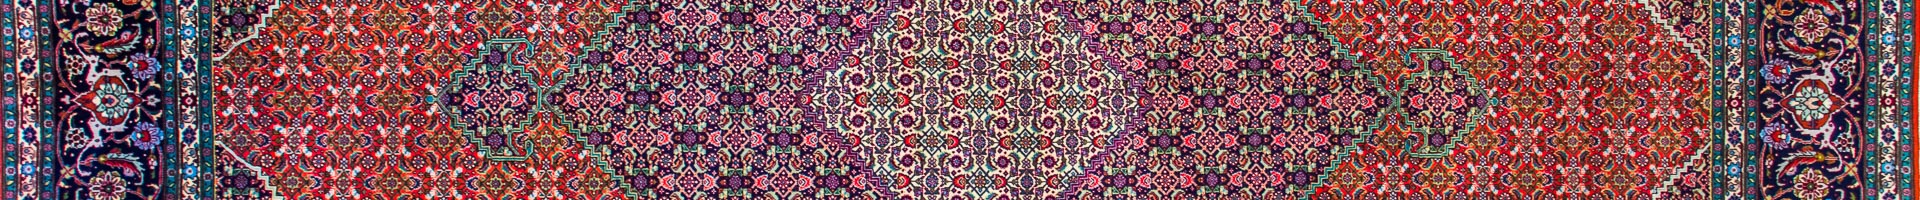 Tabriz Mahi Persian Carpet Rug N1Carpet Montreal Canada Tapis Persan